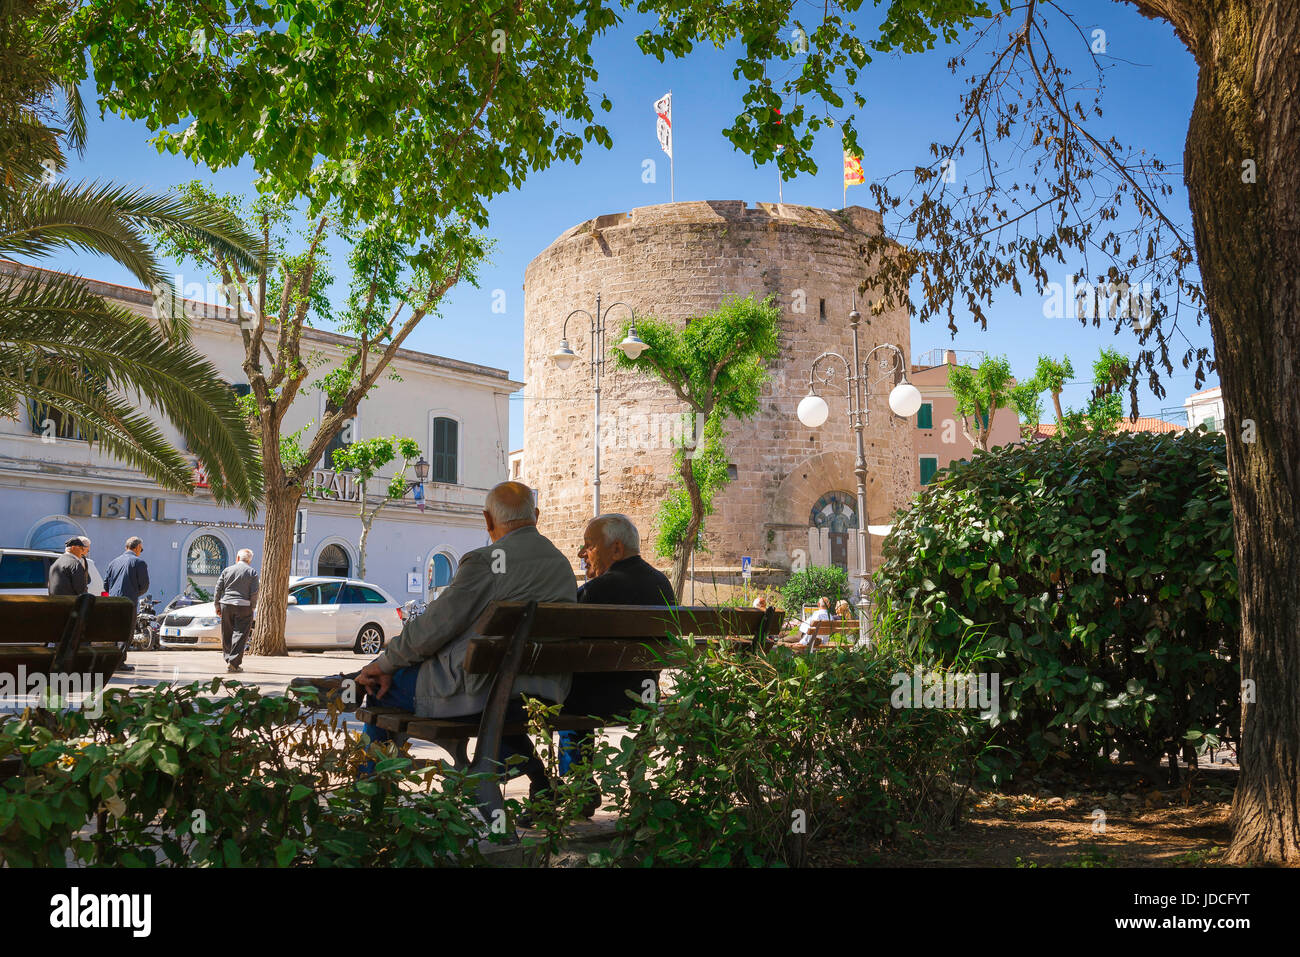 Alte Freunde, Rückansicht von zwei älteren Männern, die auf einer Bank in öffentlichen Gärten in der Nähe des mittelalterlichen Torre di Porta Terra in der Altstadt von Alghero, Sardinien, plaudern Stockfoto